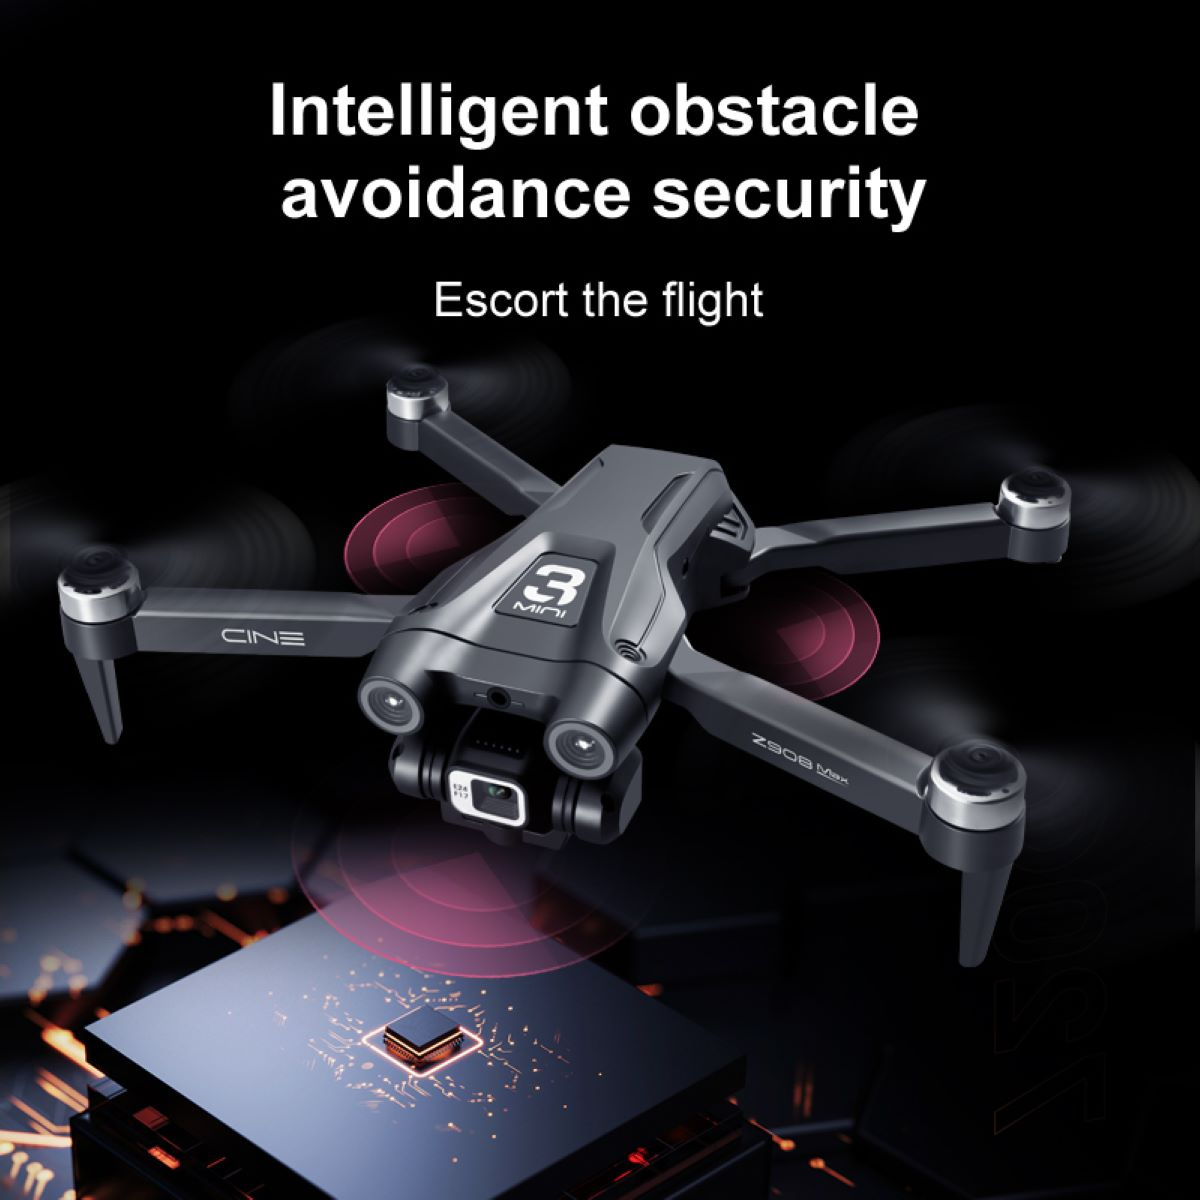 20 Minuten HD-Video 4K Mini BYTELIKE Quadrocopter Grau 4 Kinder Flugzeit für QuickShots Drohne, Kamera mit Drohne -